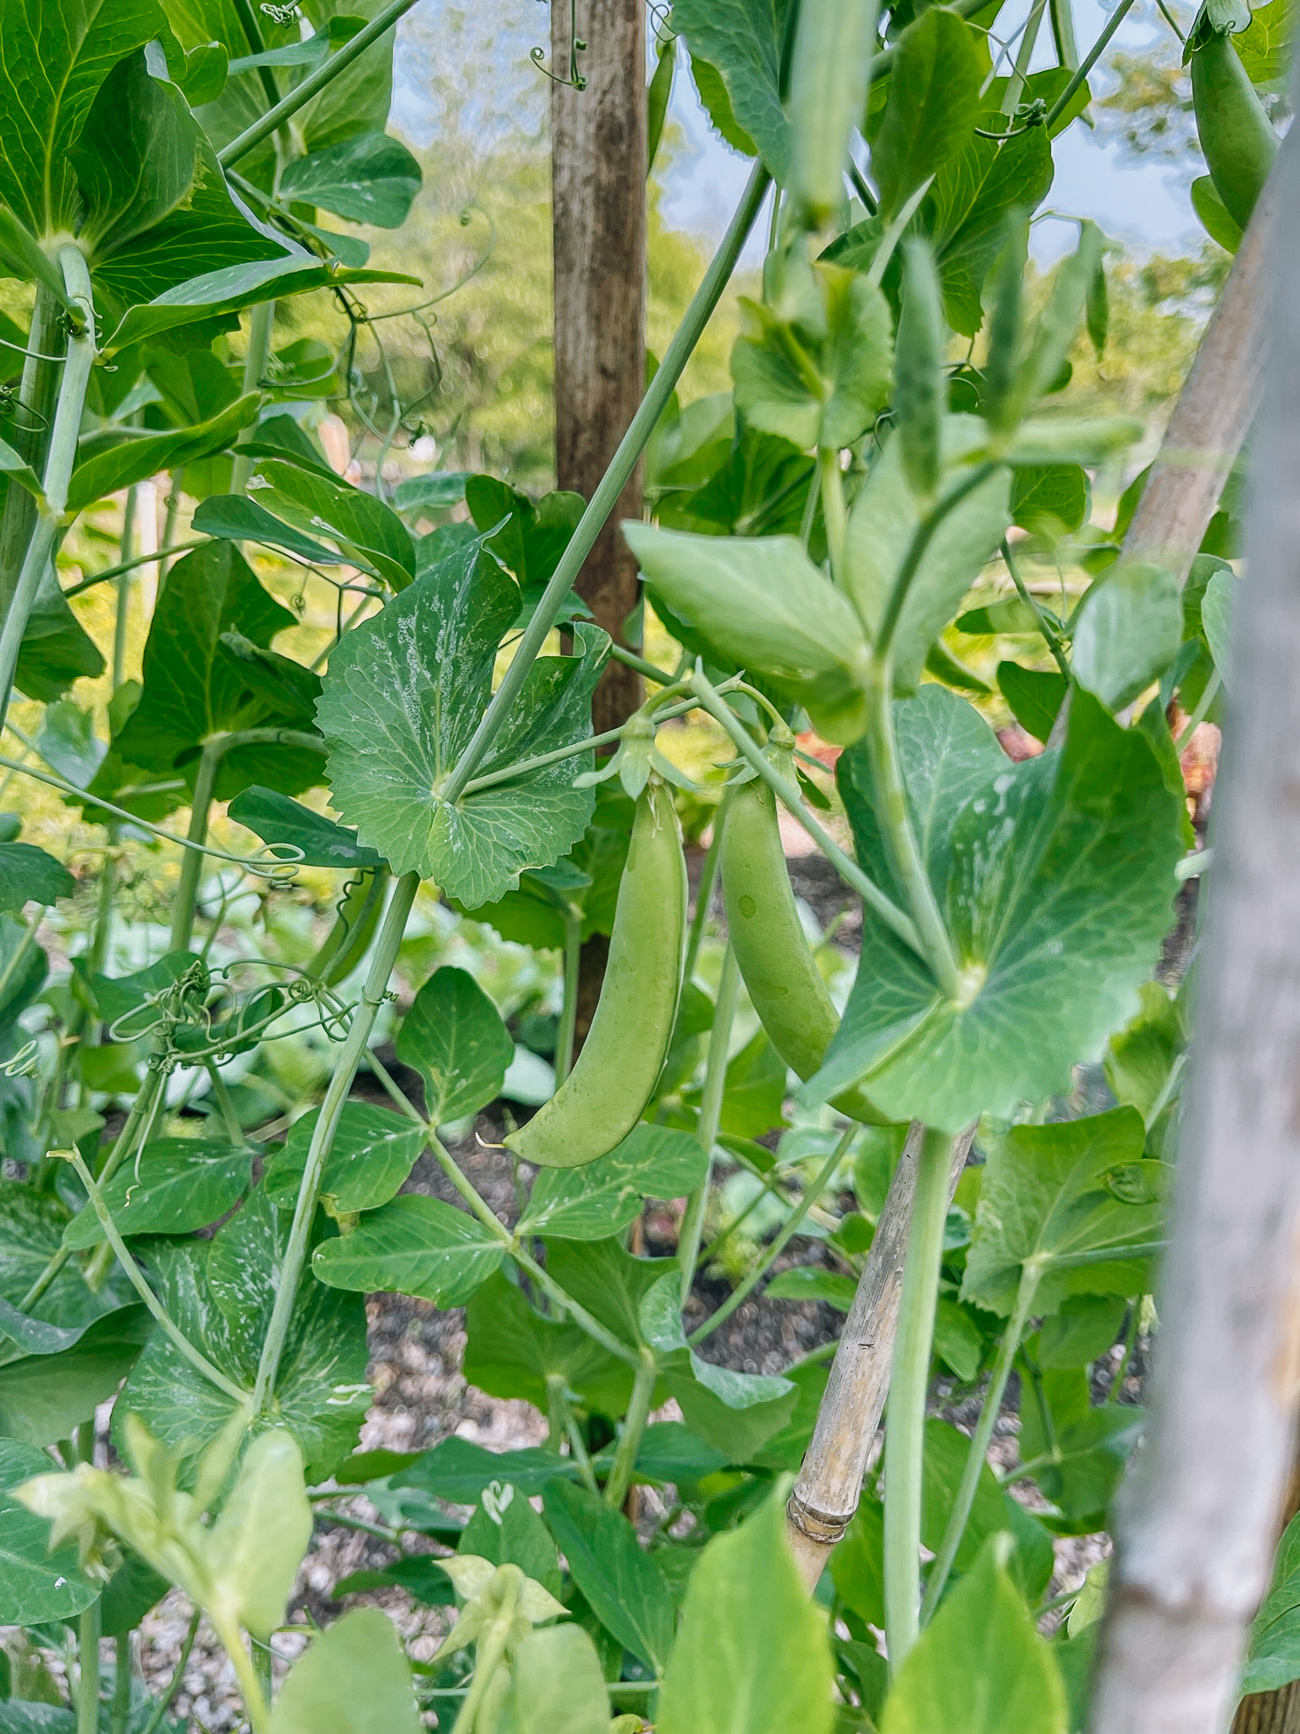 sugar snap peas growing on vines